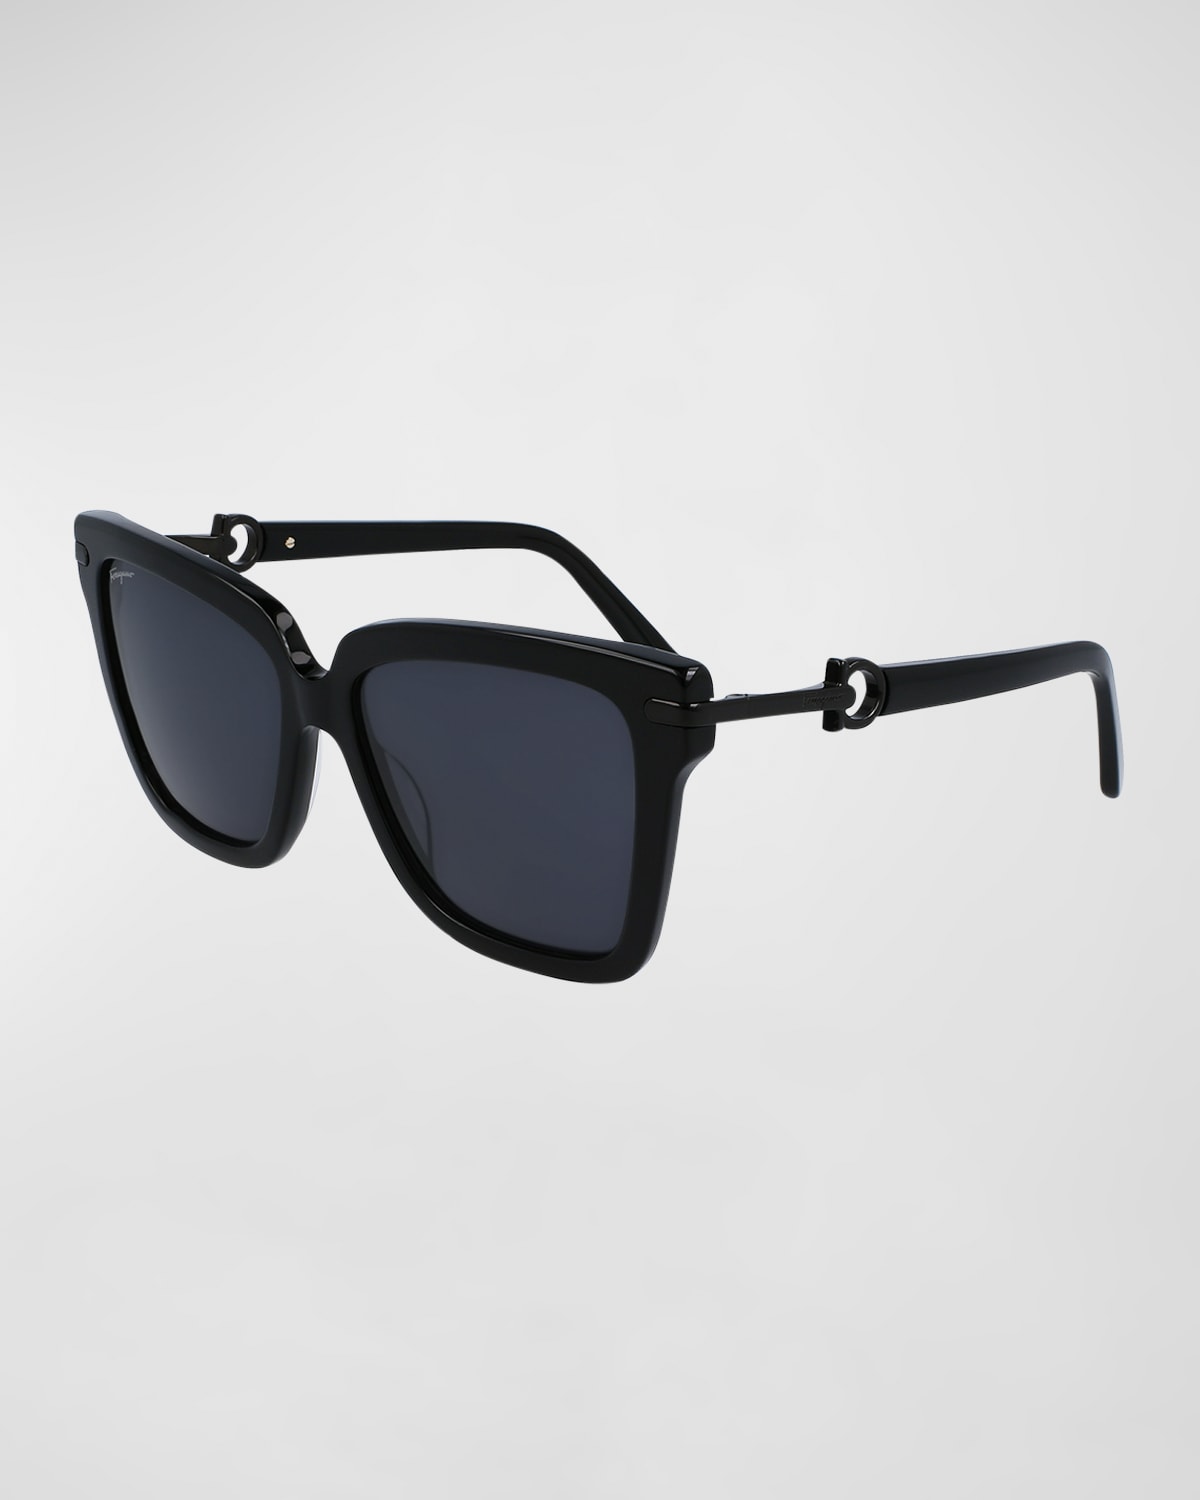 Gancini Square Acetate Sunglasses